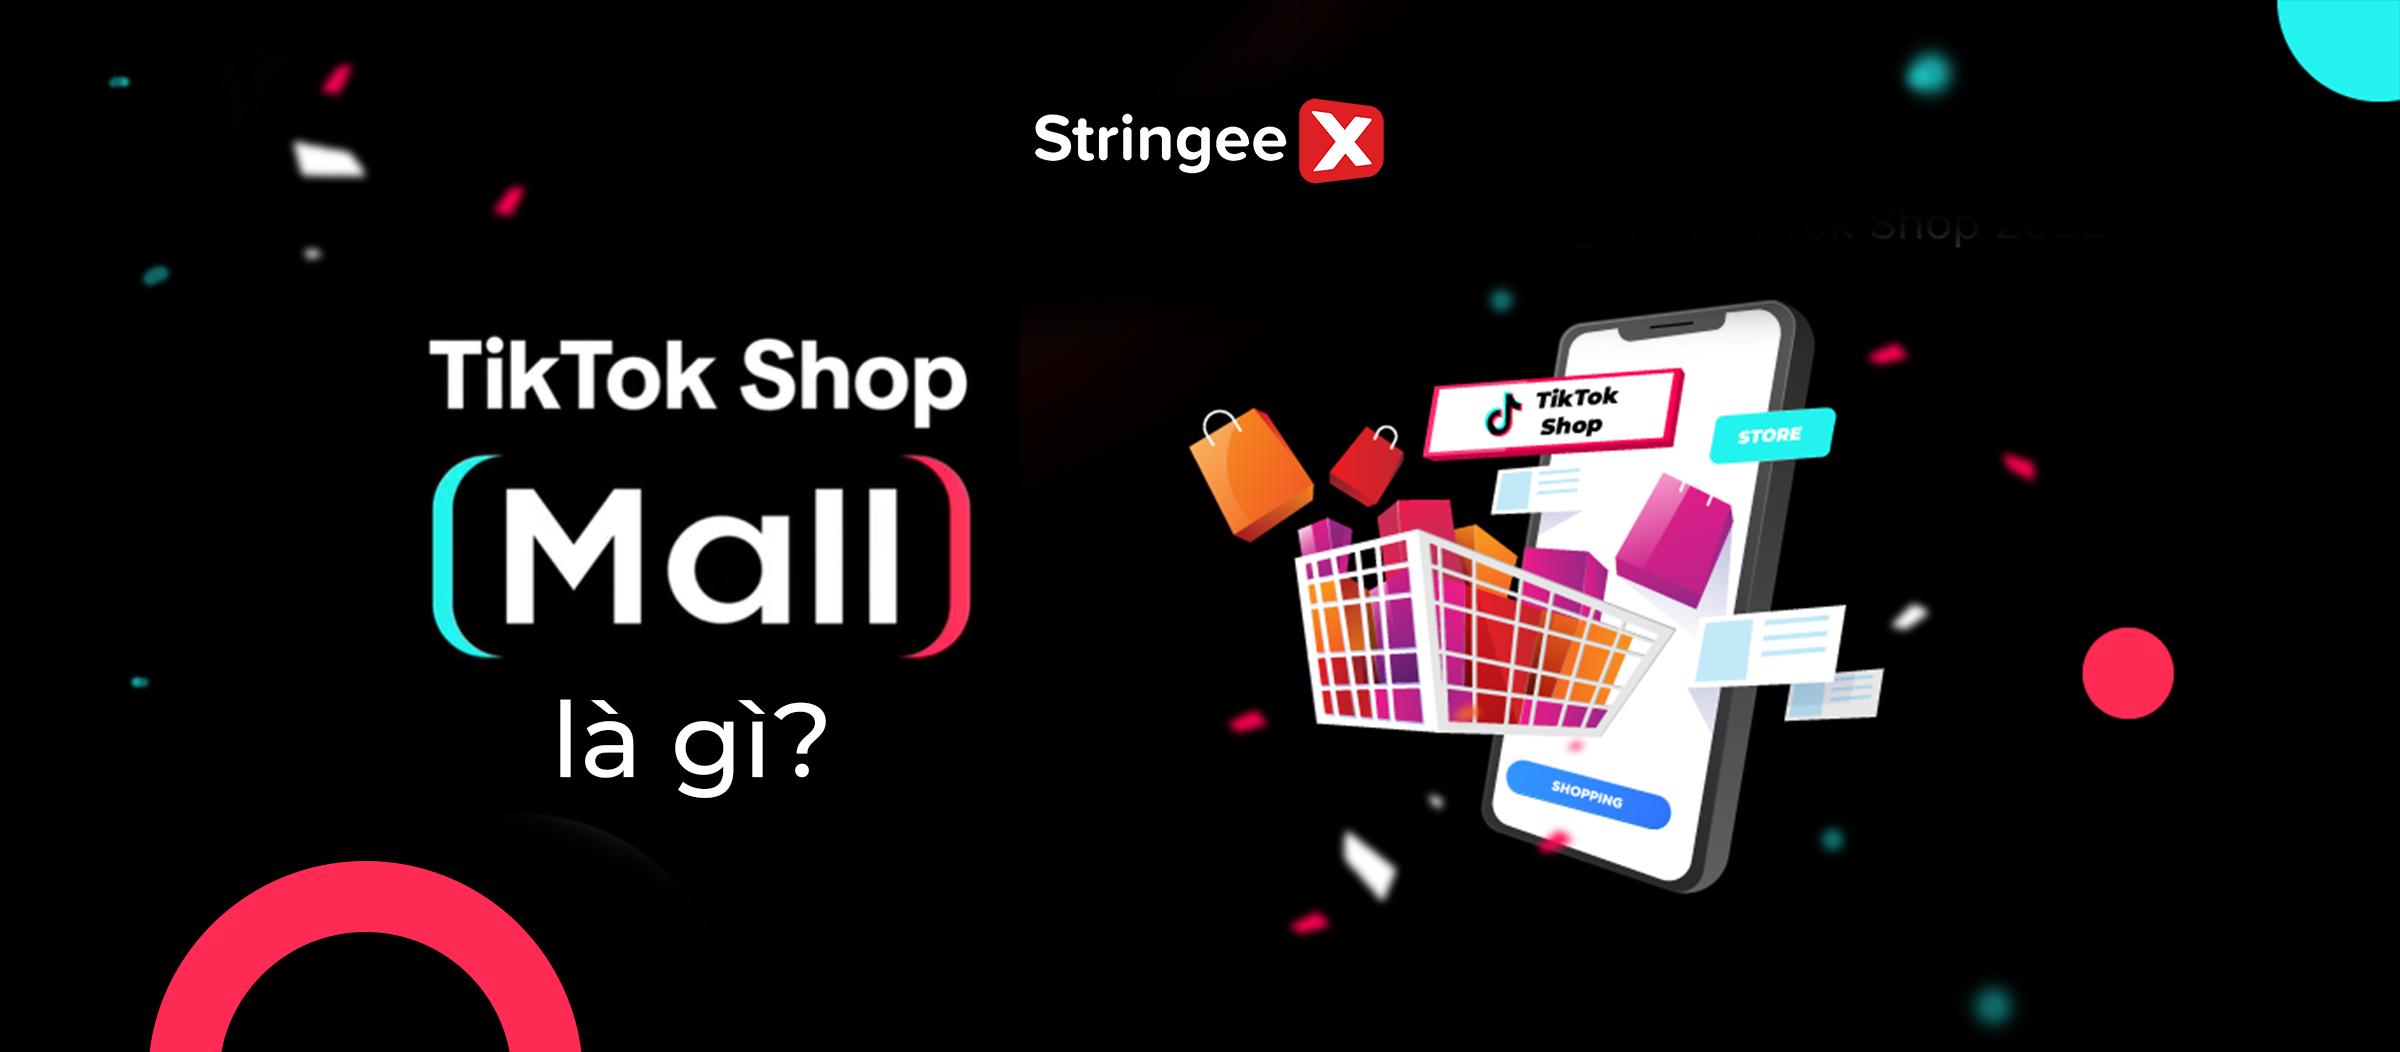 TikTok Shop Mall là gì? Cơ hội bứt phá doanh thu cho thương hiệu và nhà bán chính hãng